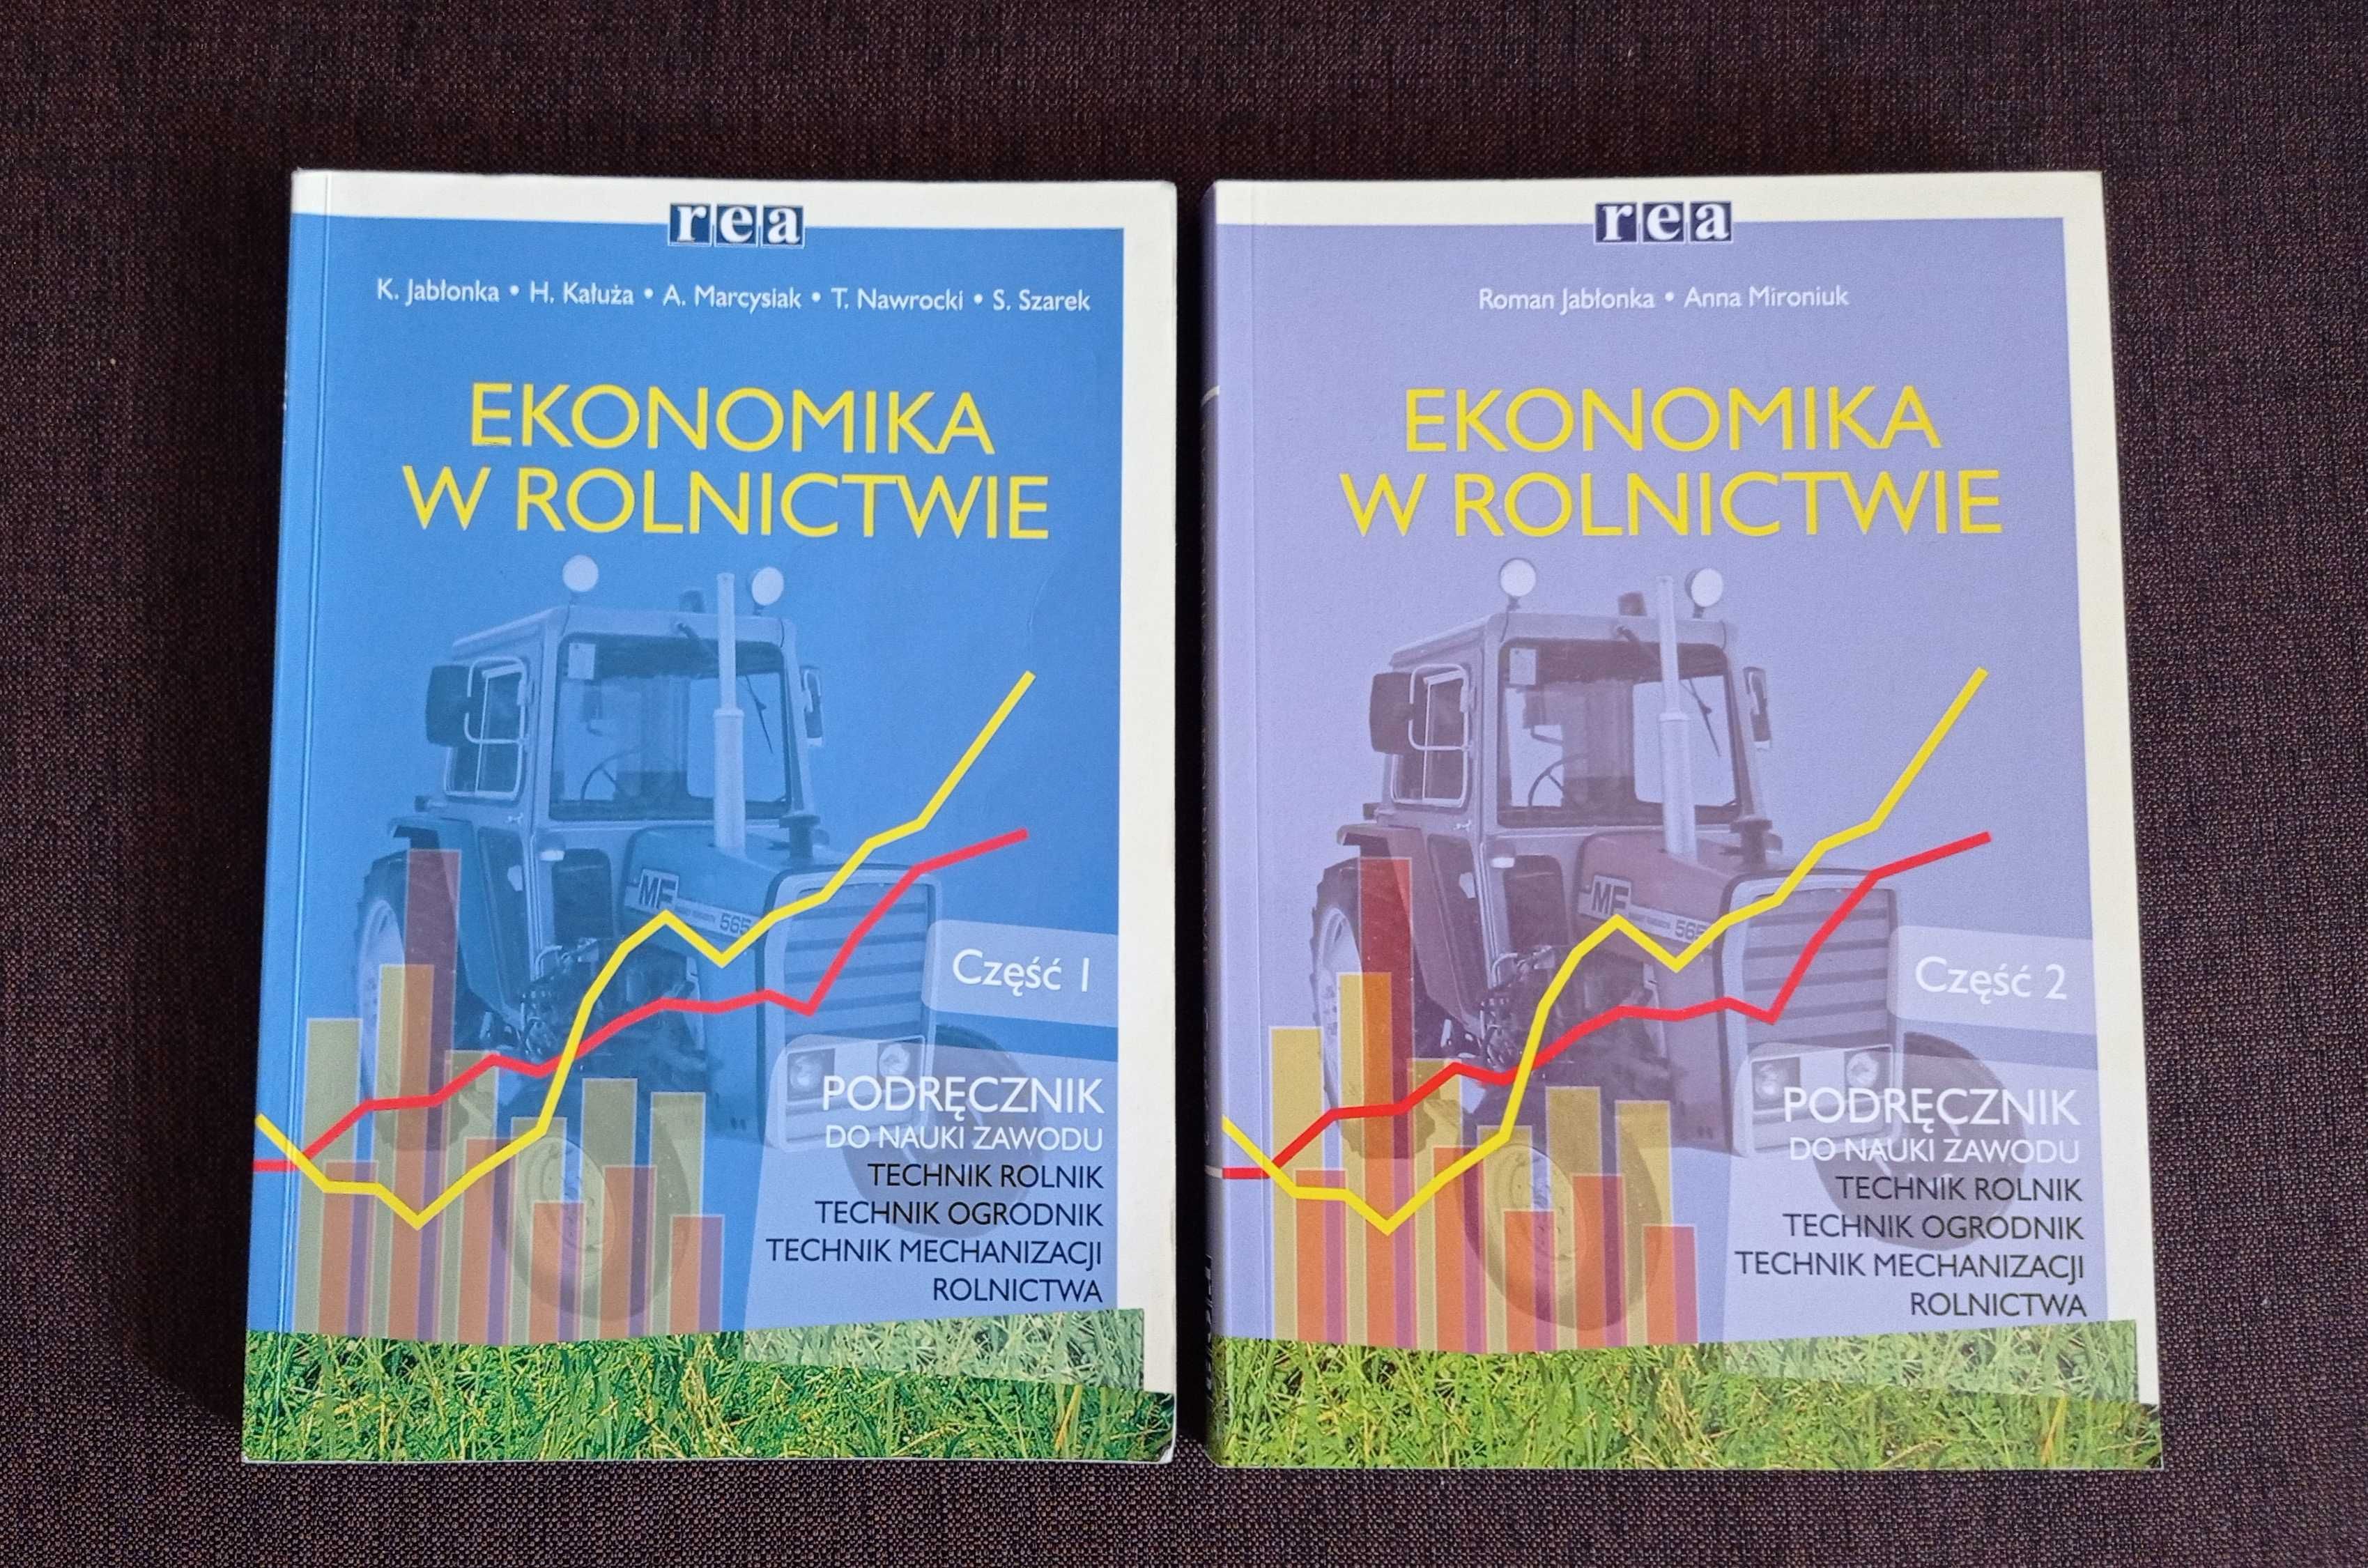 Ekonomika w rolnictwie cz.1 i cz.2 wyd. Rea K Jabłonka, R. Jabłonka